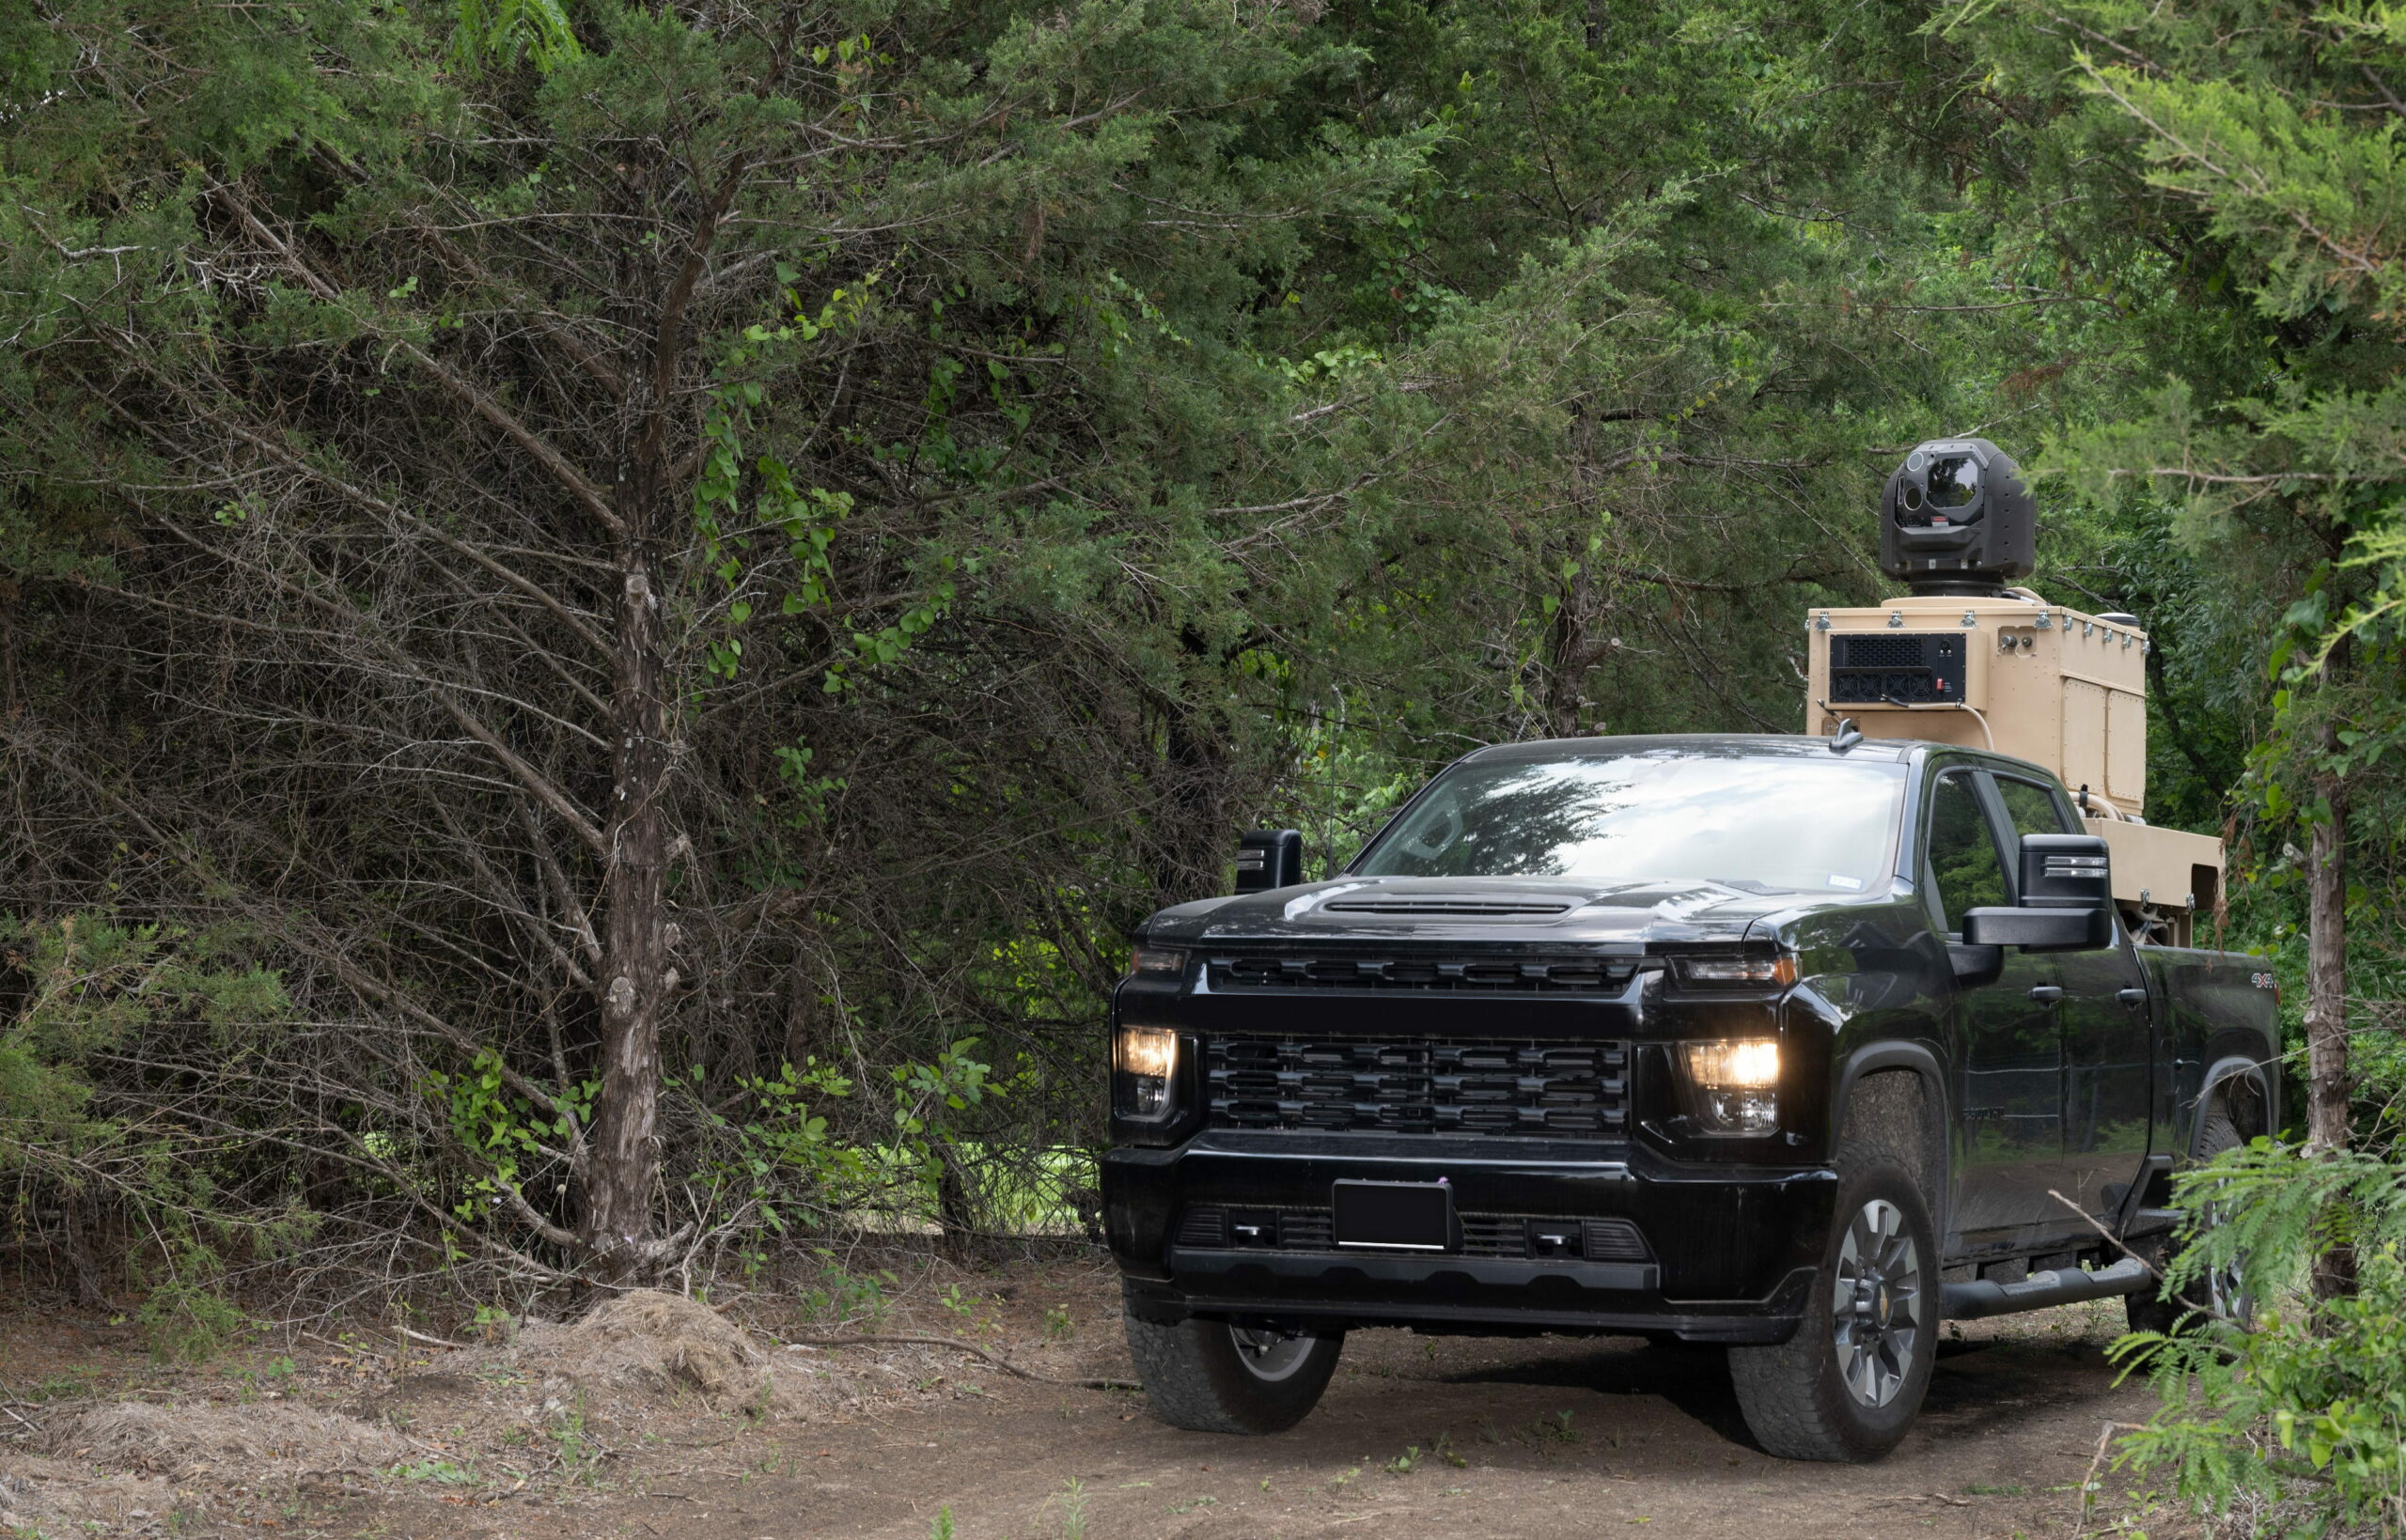 10-kilowatt short-range air defense (SHORAD) laser mounted on a pickup truck.